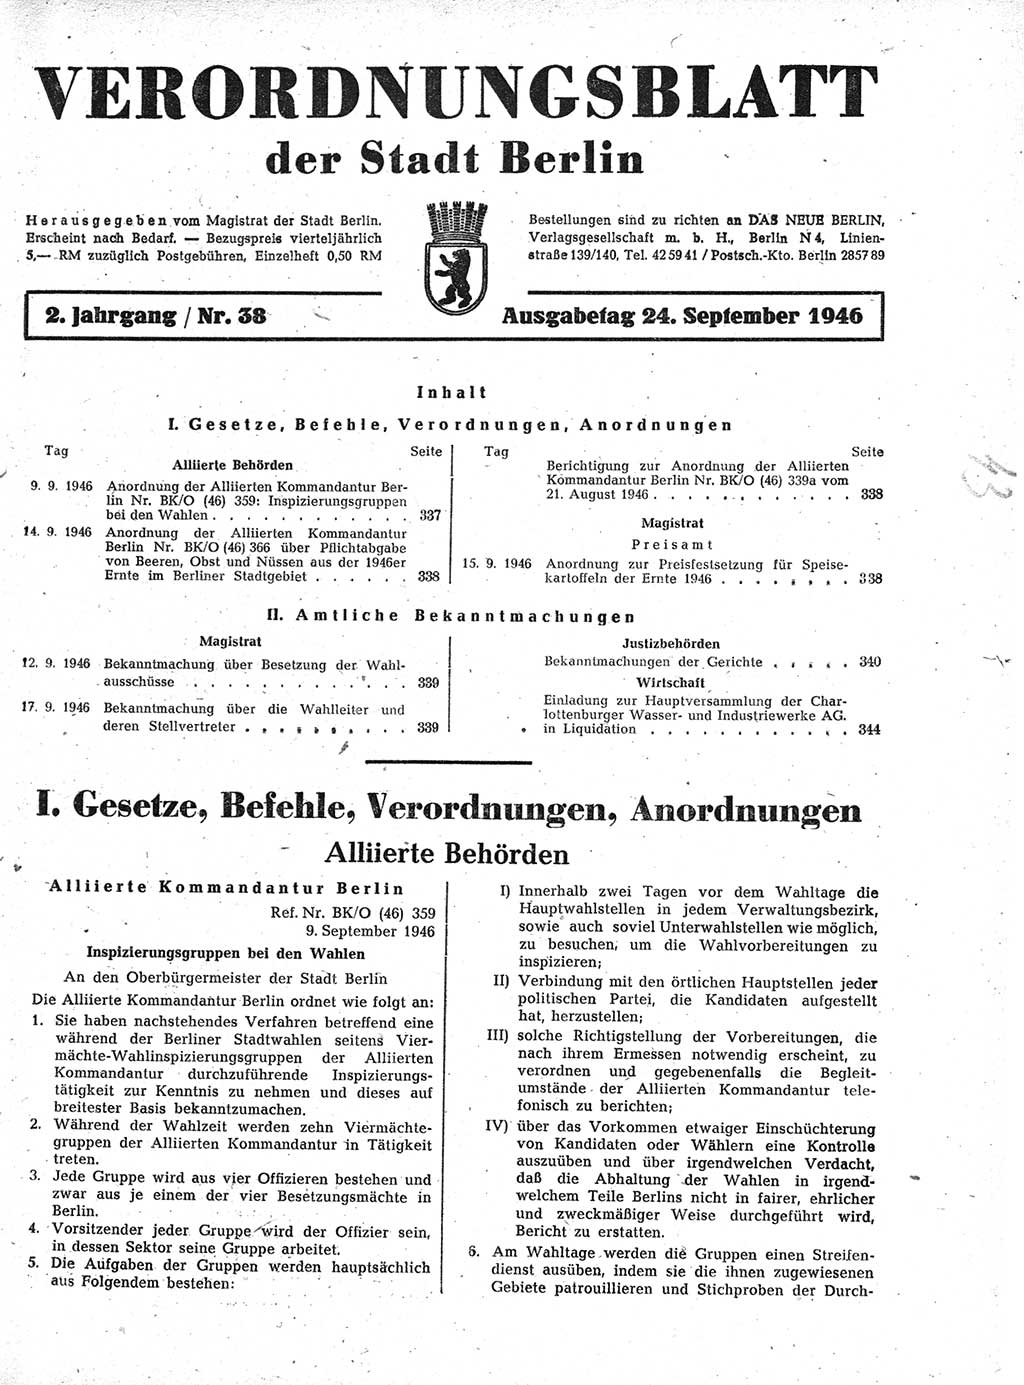 Verordnungsblatt (VOBl.) der Stadt Berlin, für Groß-Berlin 1946, Seite 337 (VOBl. Bln. 1946, S. 337)